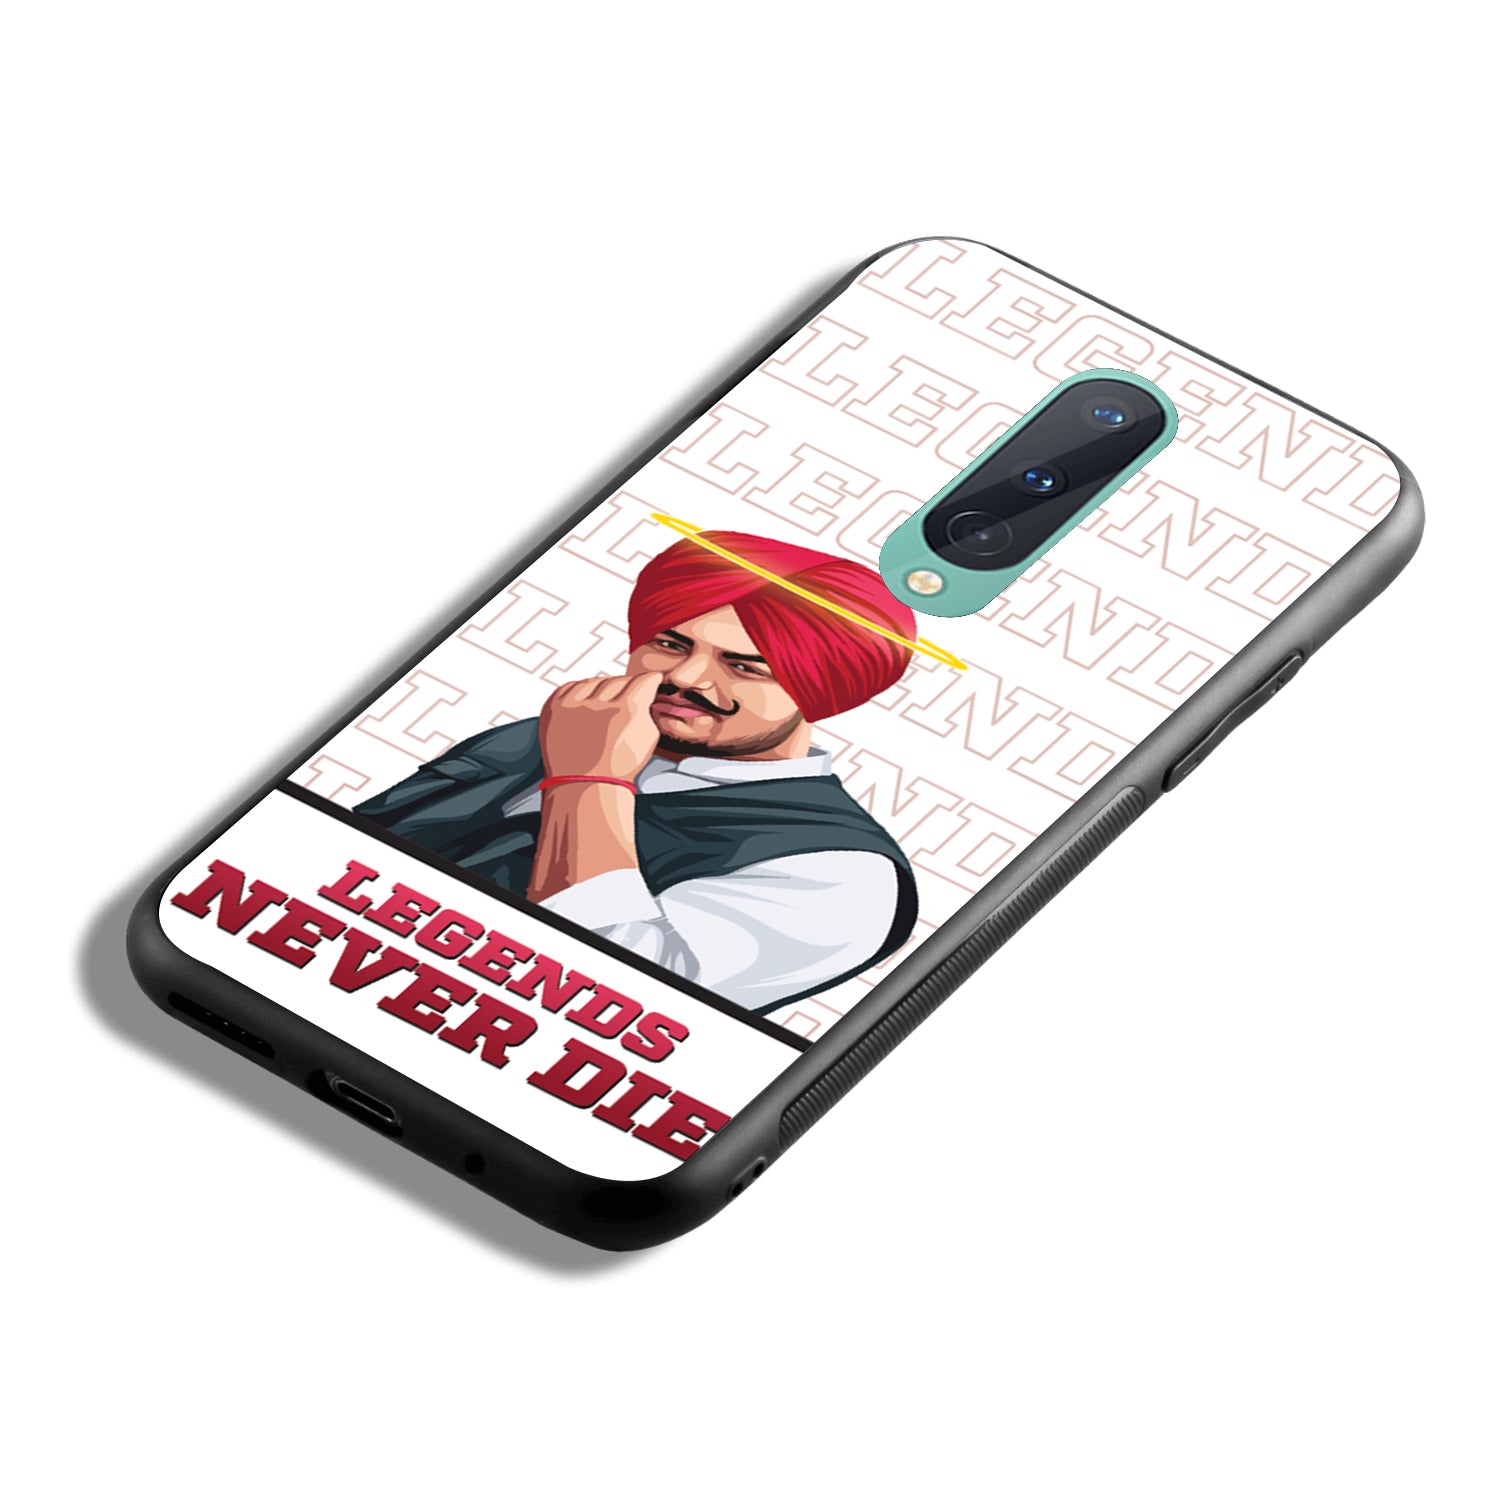 Legend Never Die Sidhu Moosewala OnePlus 8 Back Case